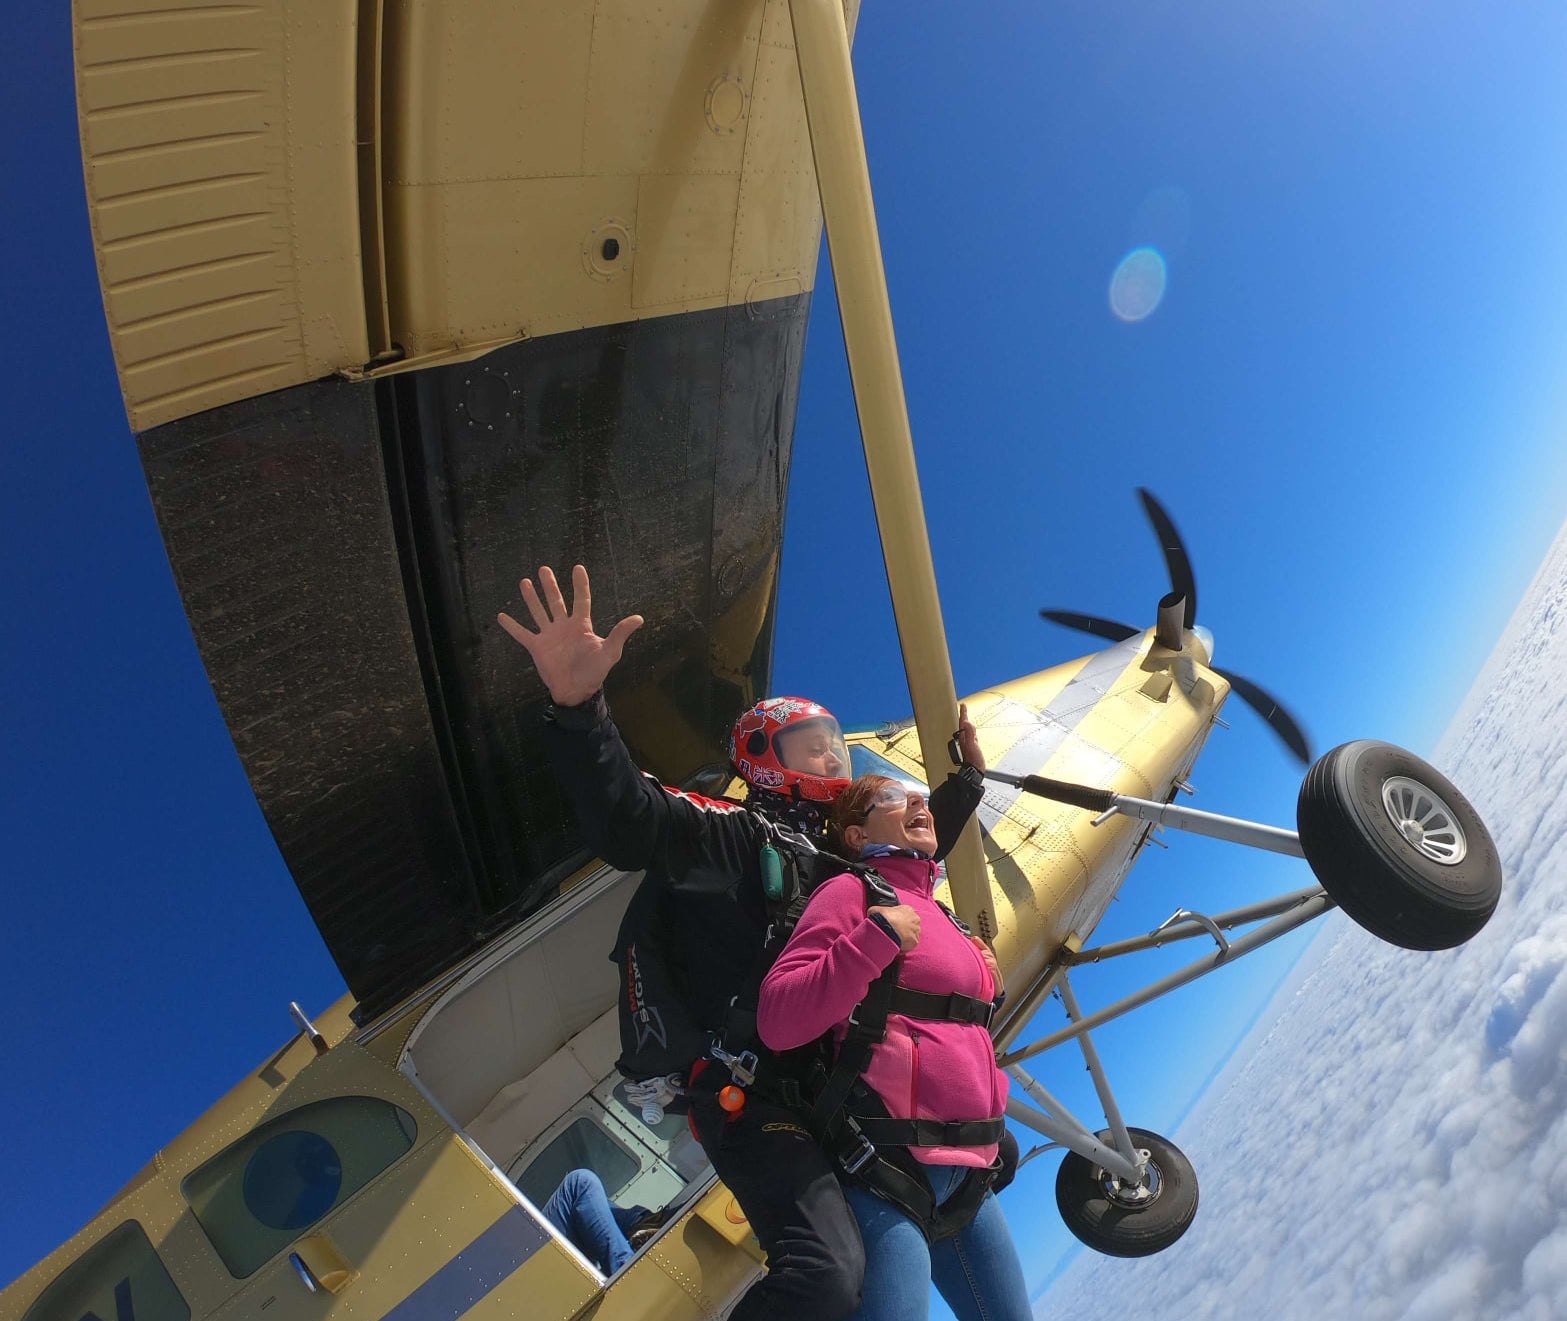 Lancio con paracadute in Tandem presso la scuola di paracadutismo di Vercelli in Piemonte